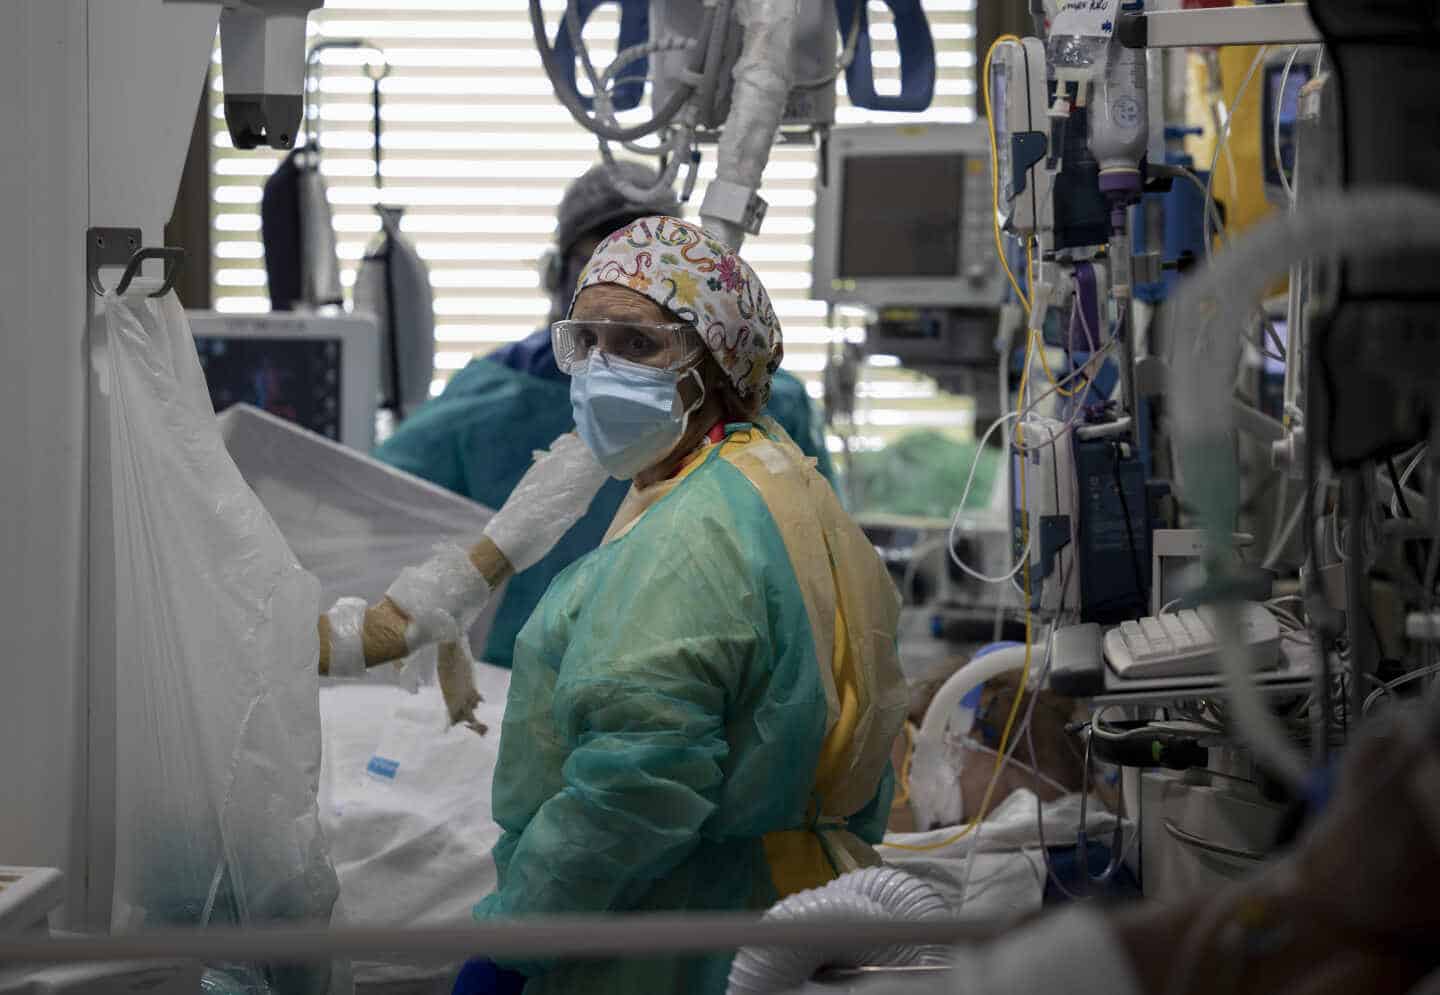 Un sanitario atiende a un paciente en la Unidad de Cuidados Intensivos (UCI) dedicada a enfermos de coronavirus del Hospital Universitario Ramón y Cajal, en Madrid en 2020.